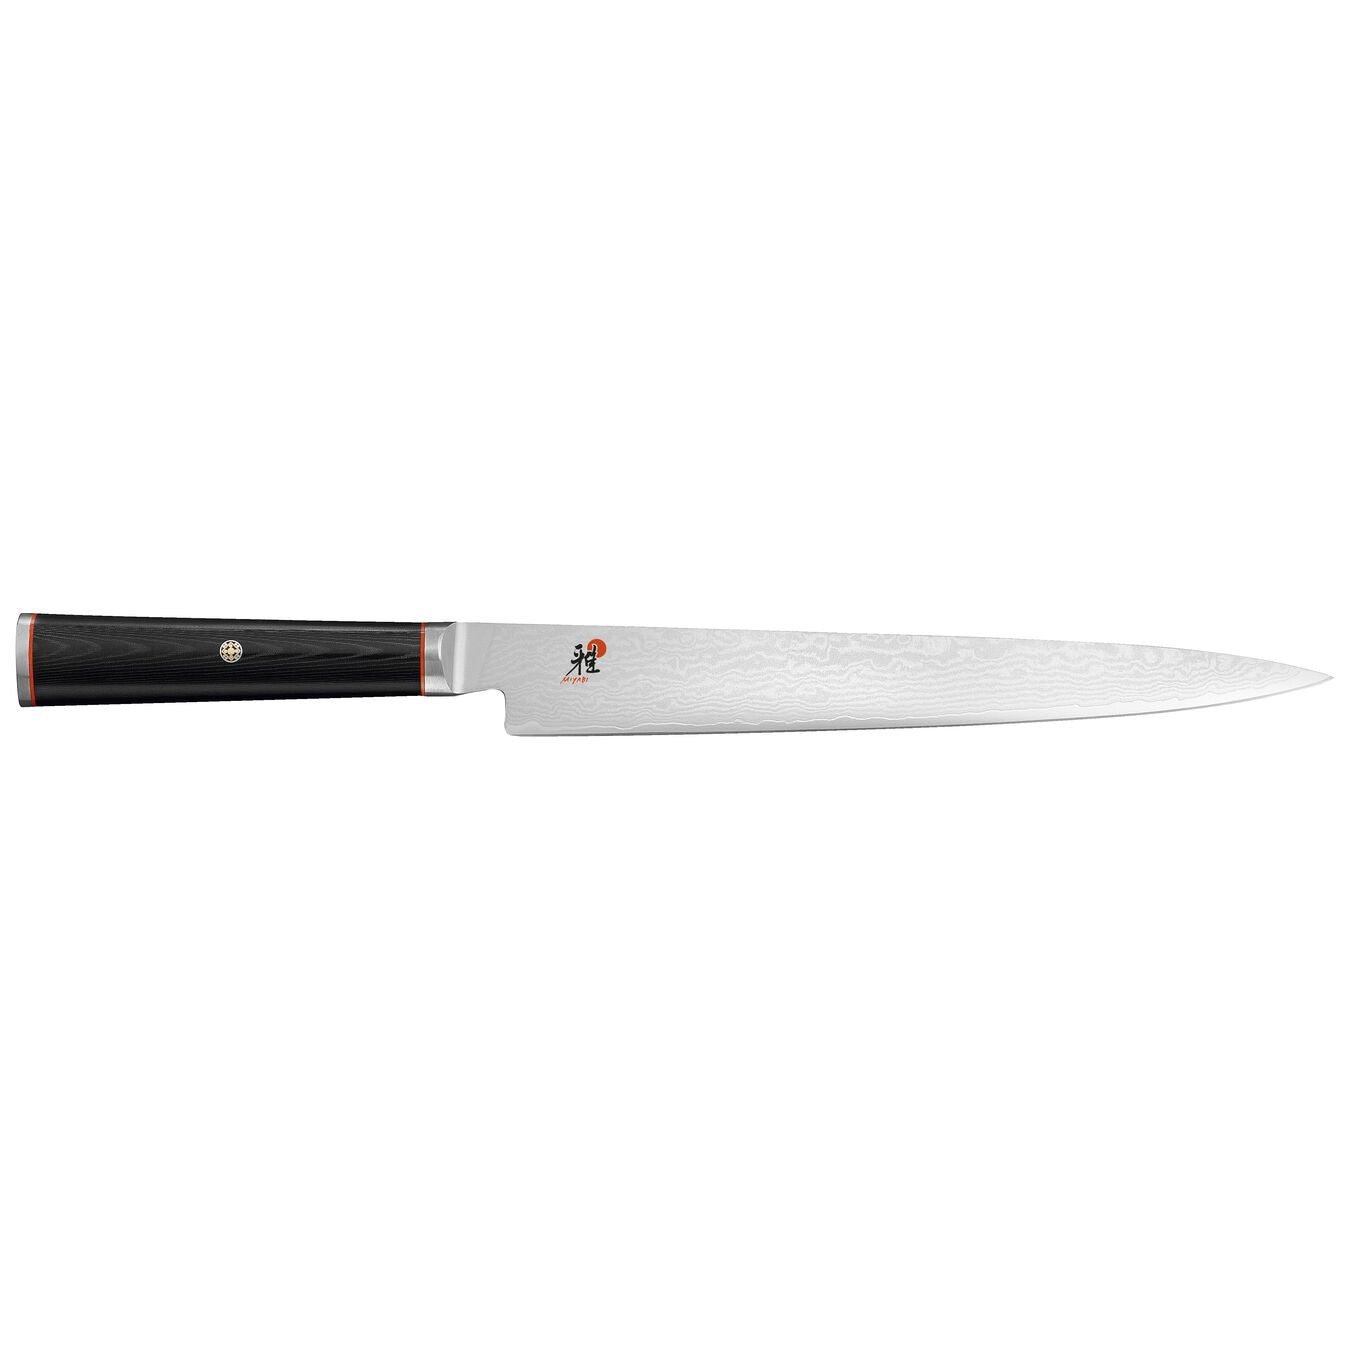 34188-241 miyabi kaizen slicing knife